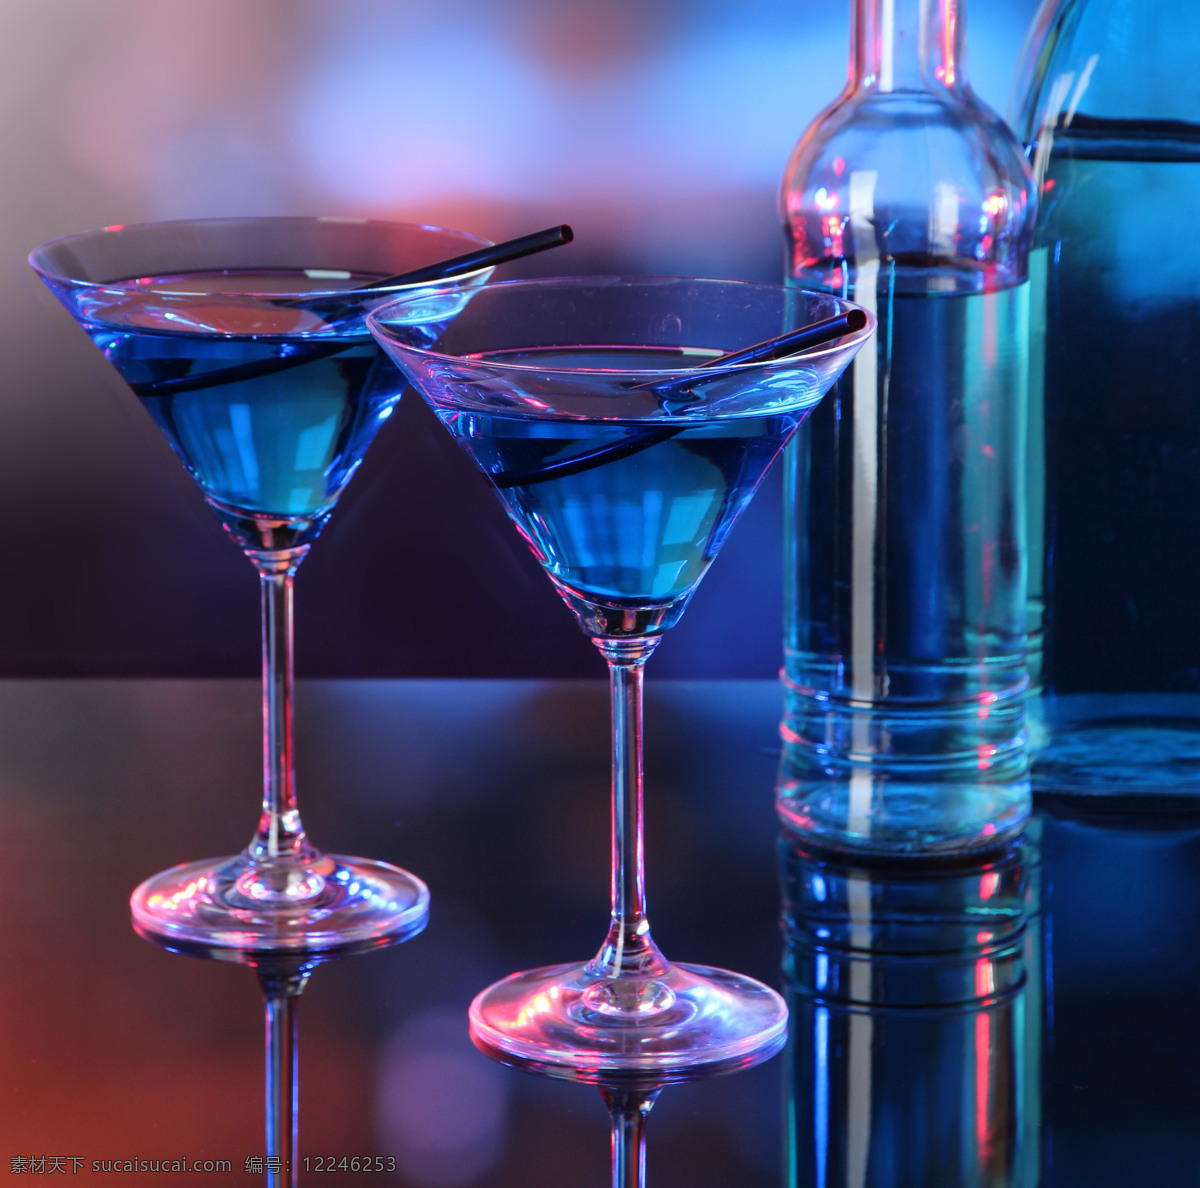 蓝色 鸡尾酒 高脚杯 玻璃酒杯 玻璃杯子 酒水饮料 鸡尾酒图片 餐饮美食